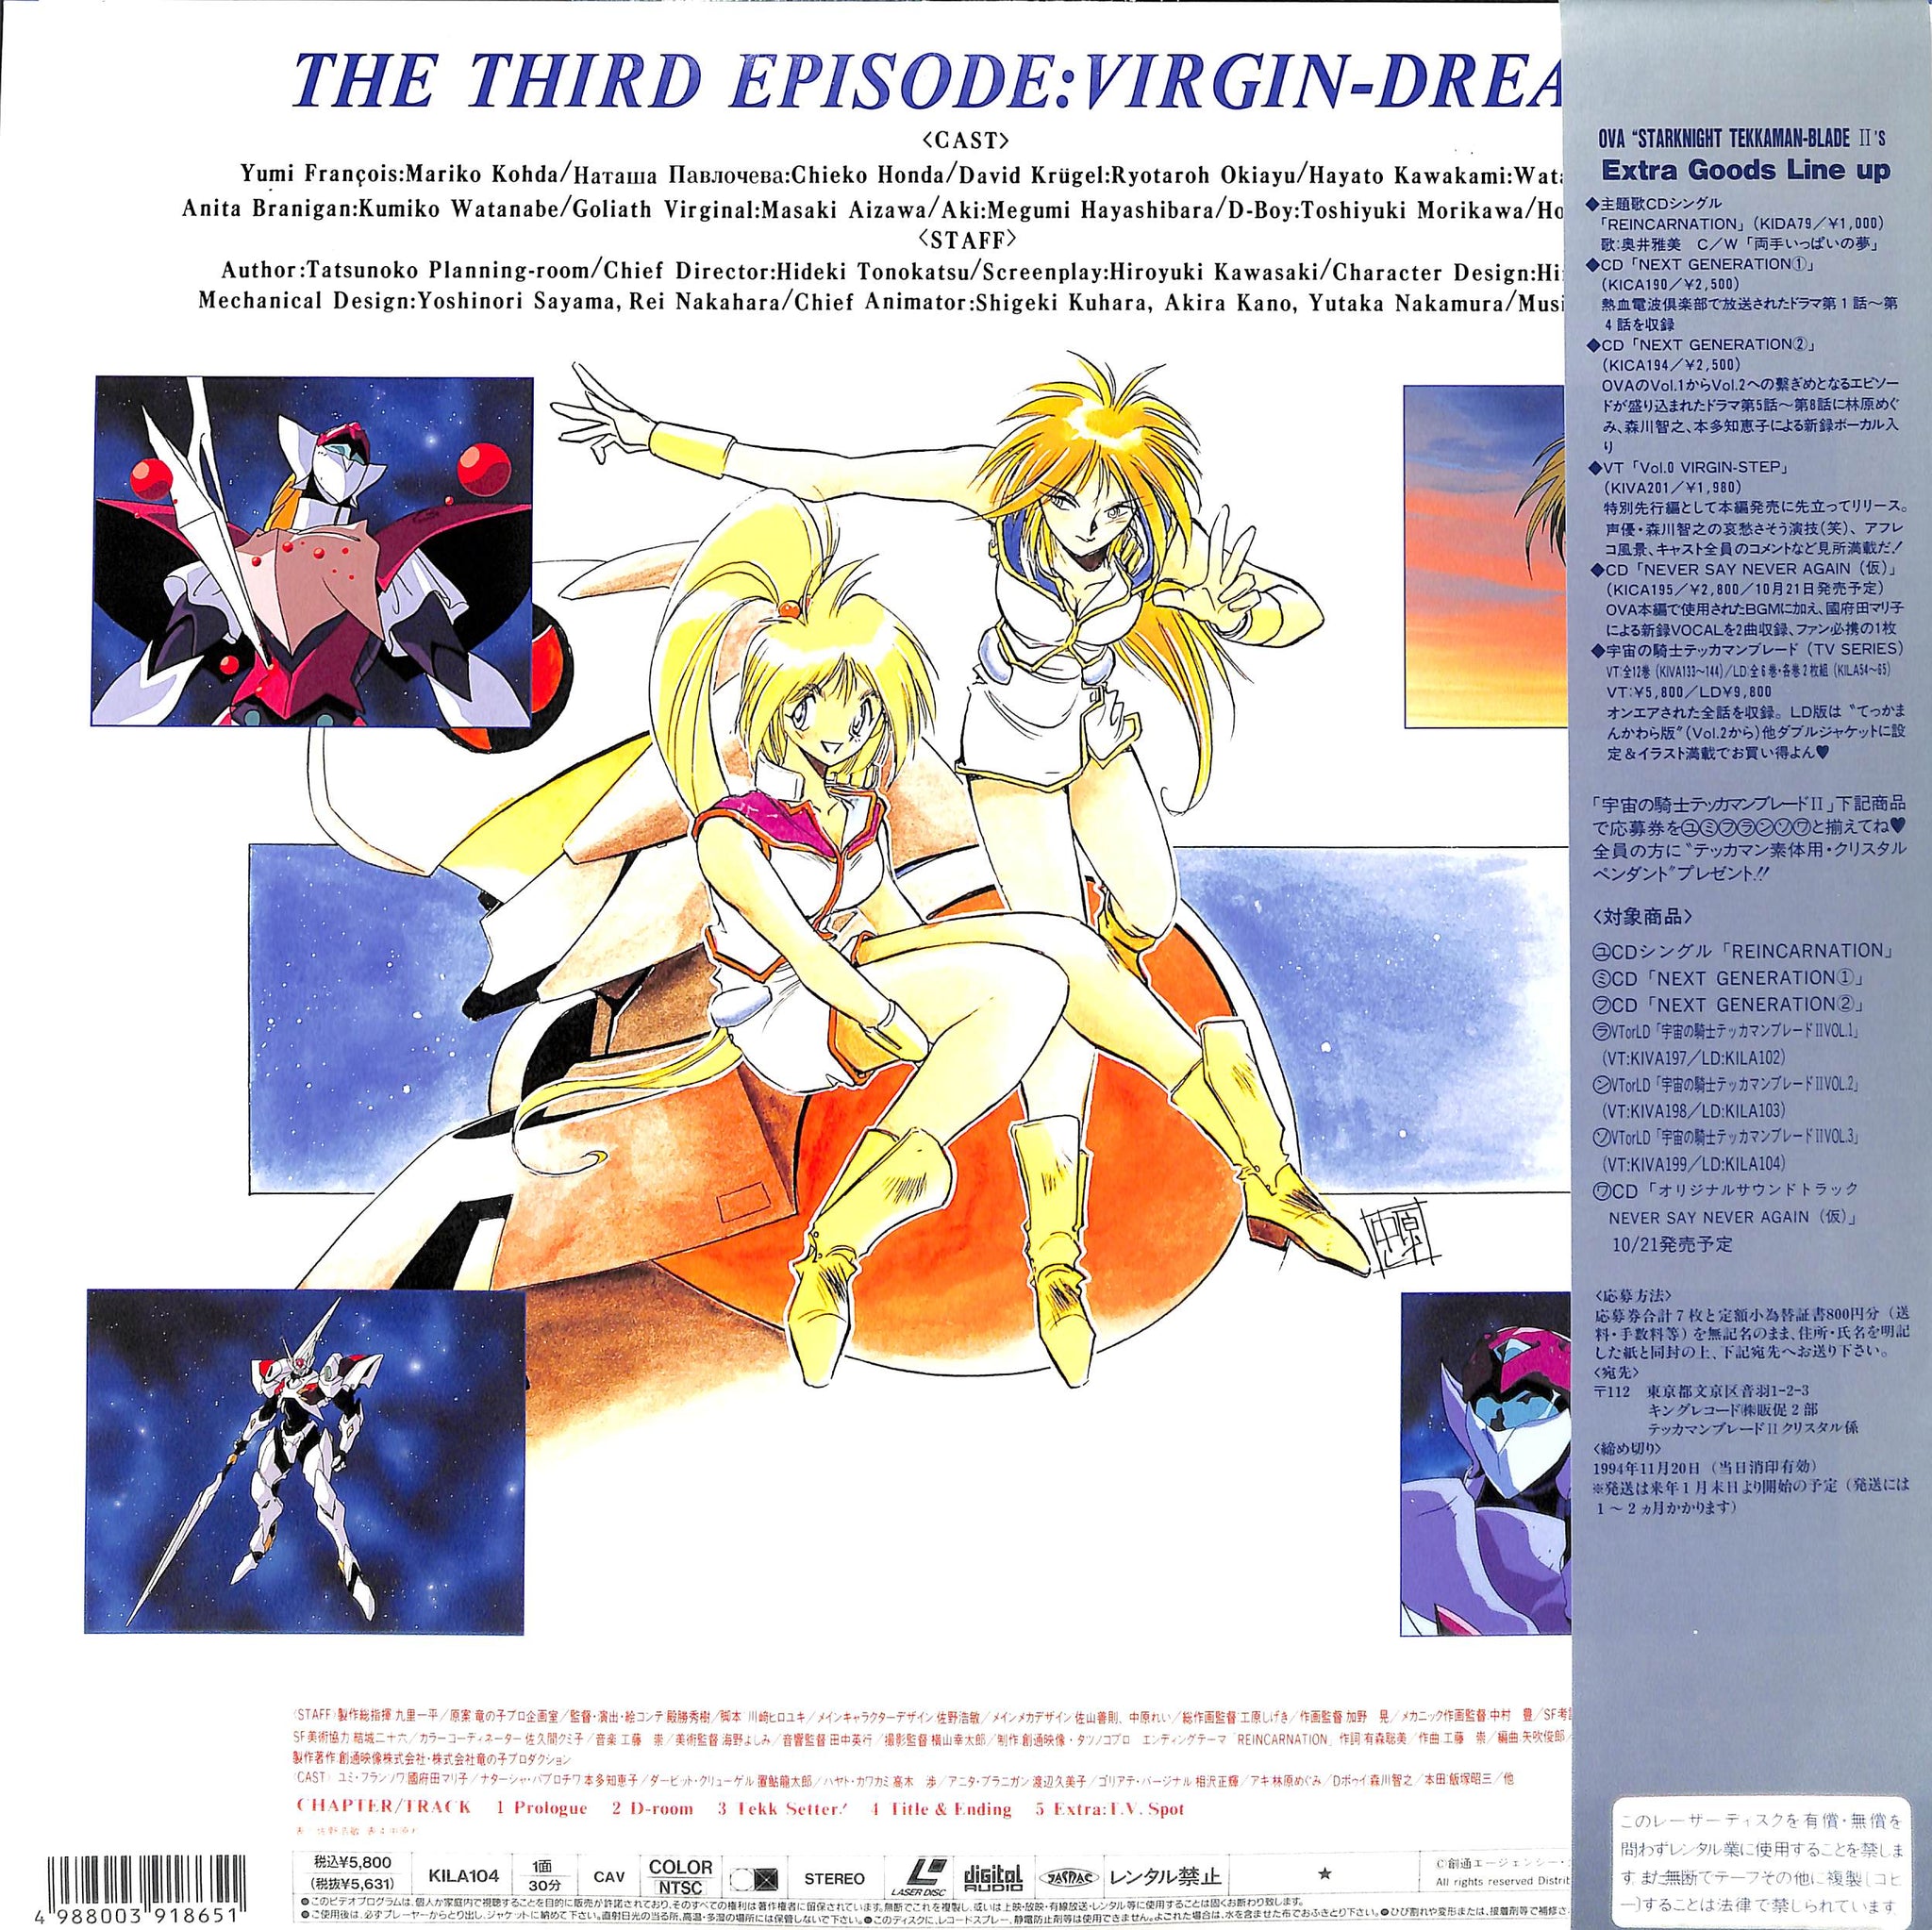 宇宙の騎士テッカマンブレード II Vol.3 Virgin Dream [Laser Disc 